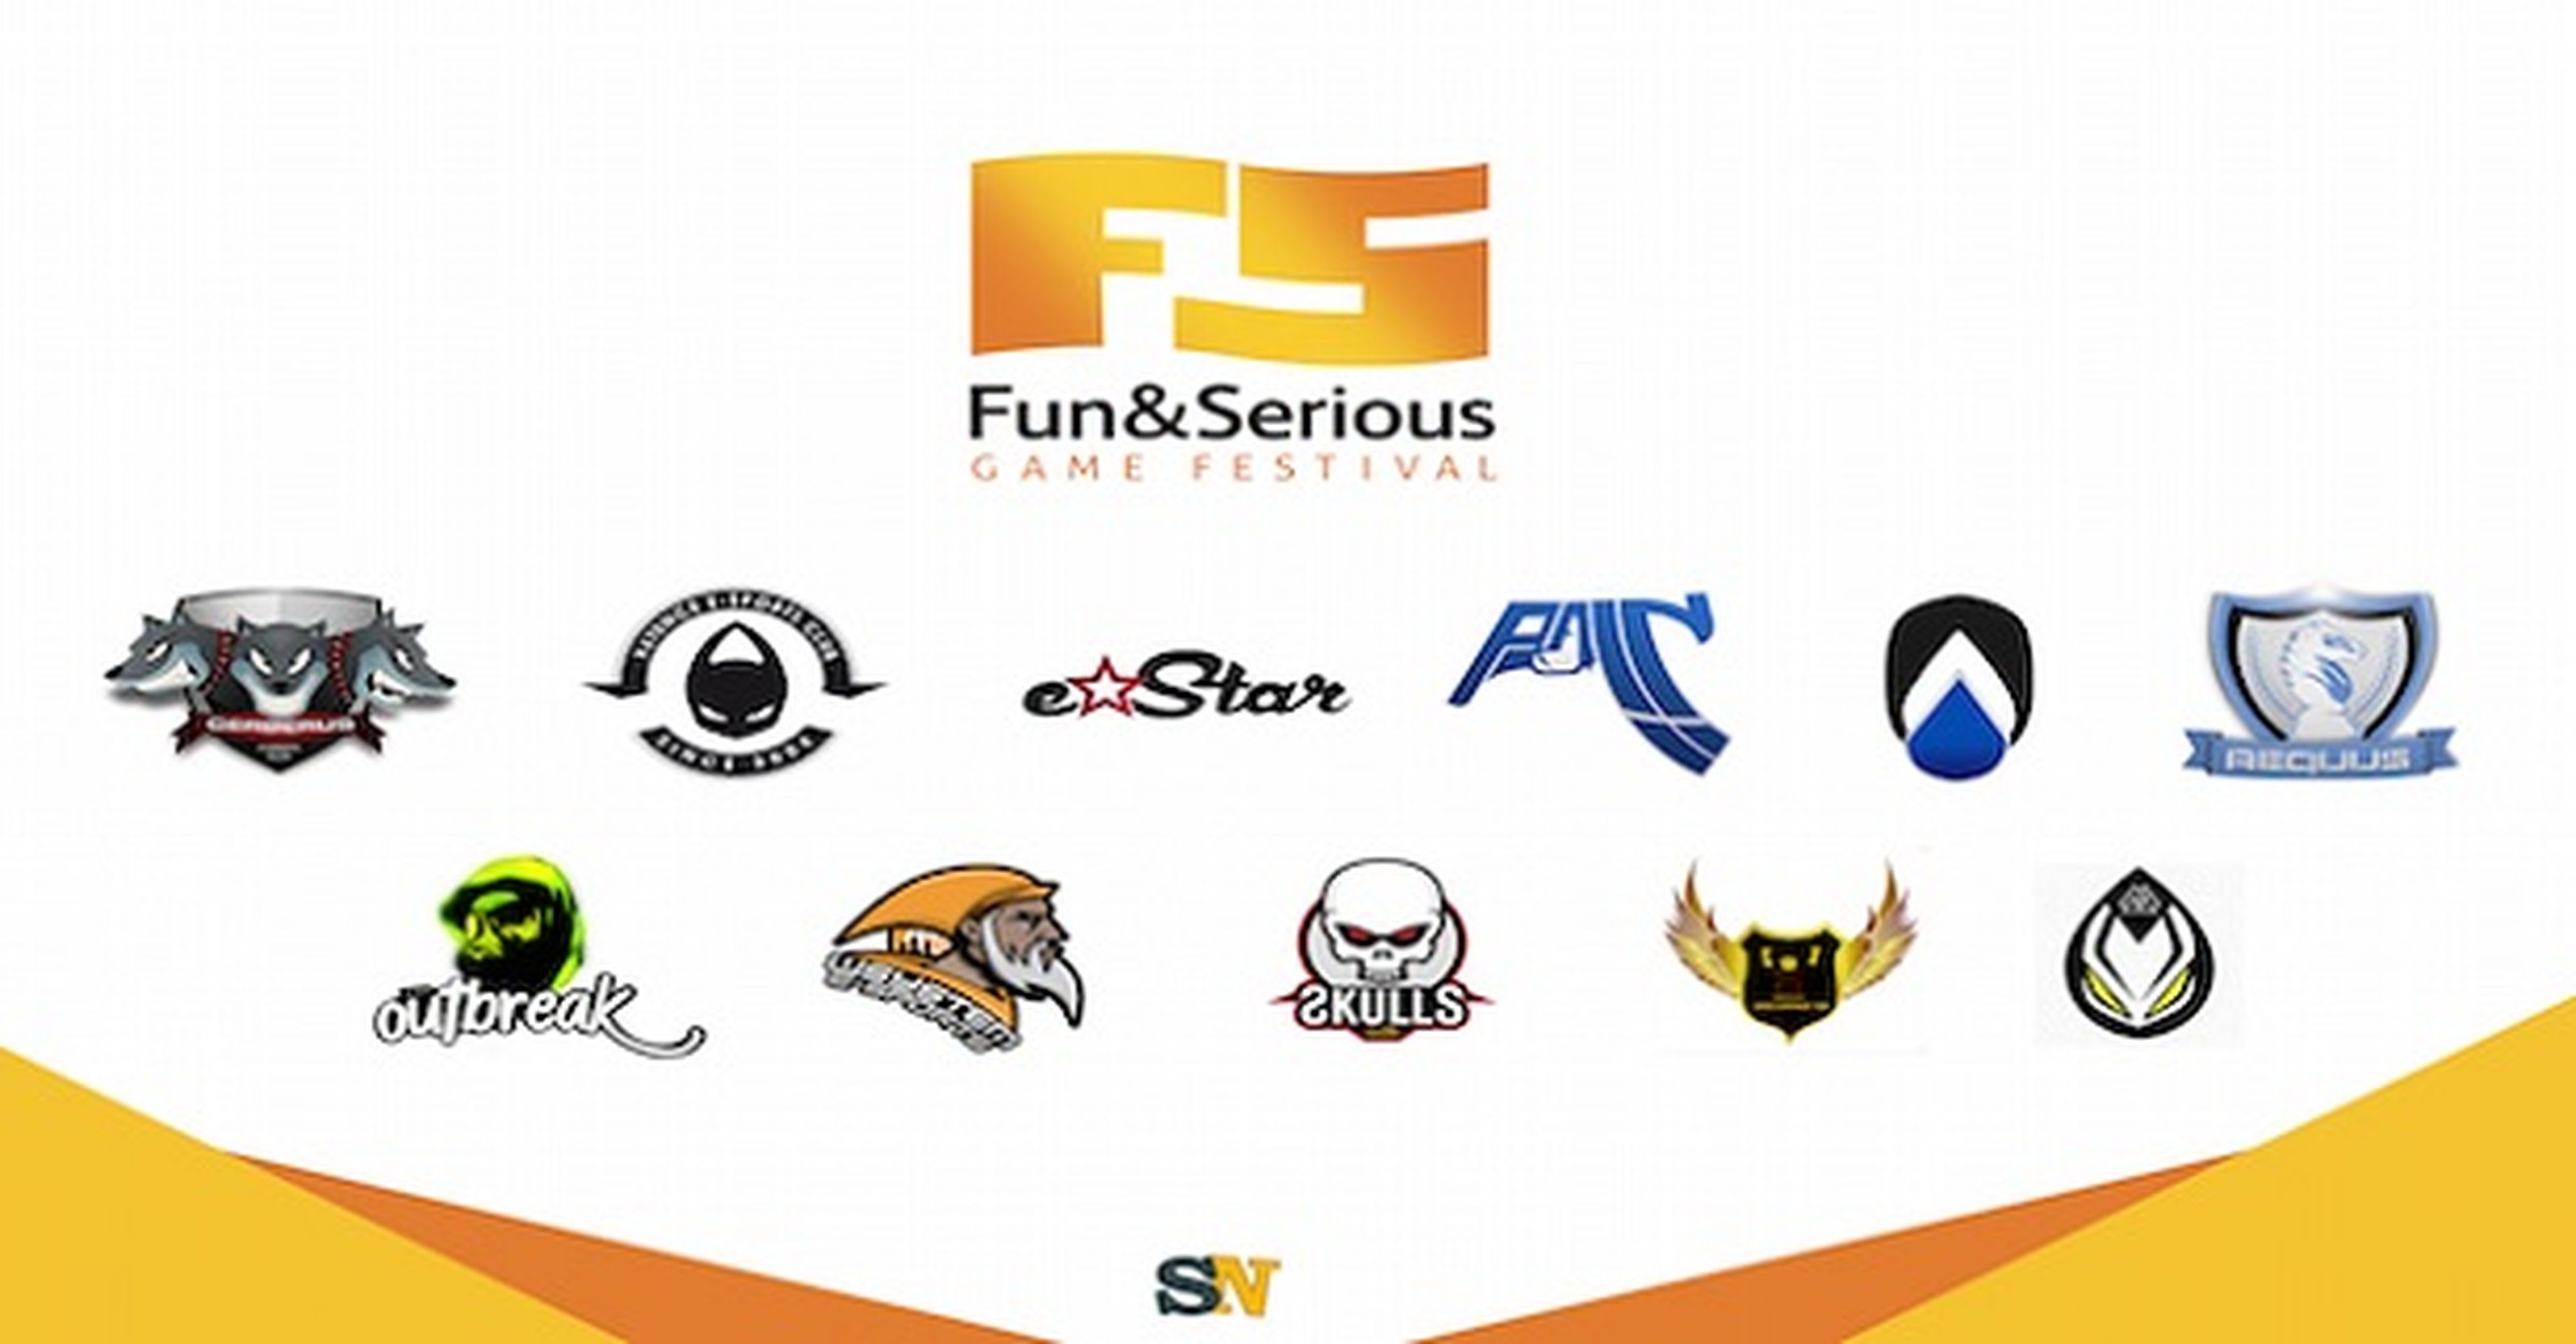 Los eSports y SocialNAT triunfan en Fun & Serious